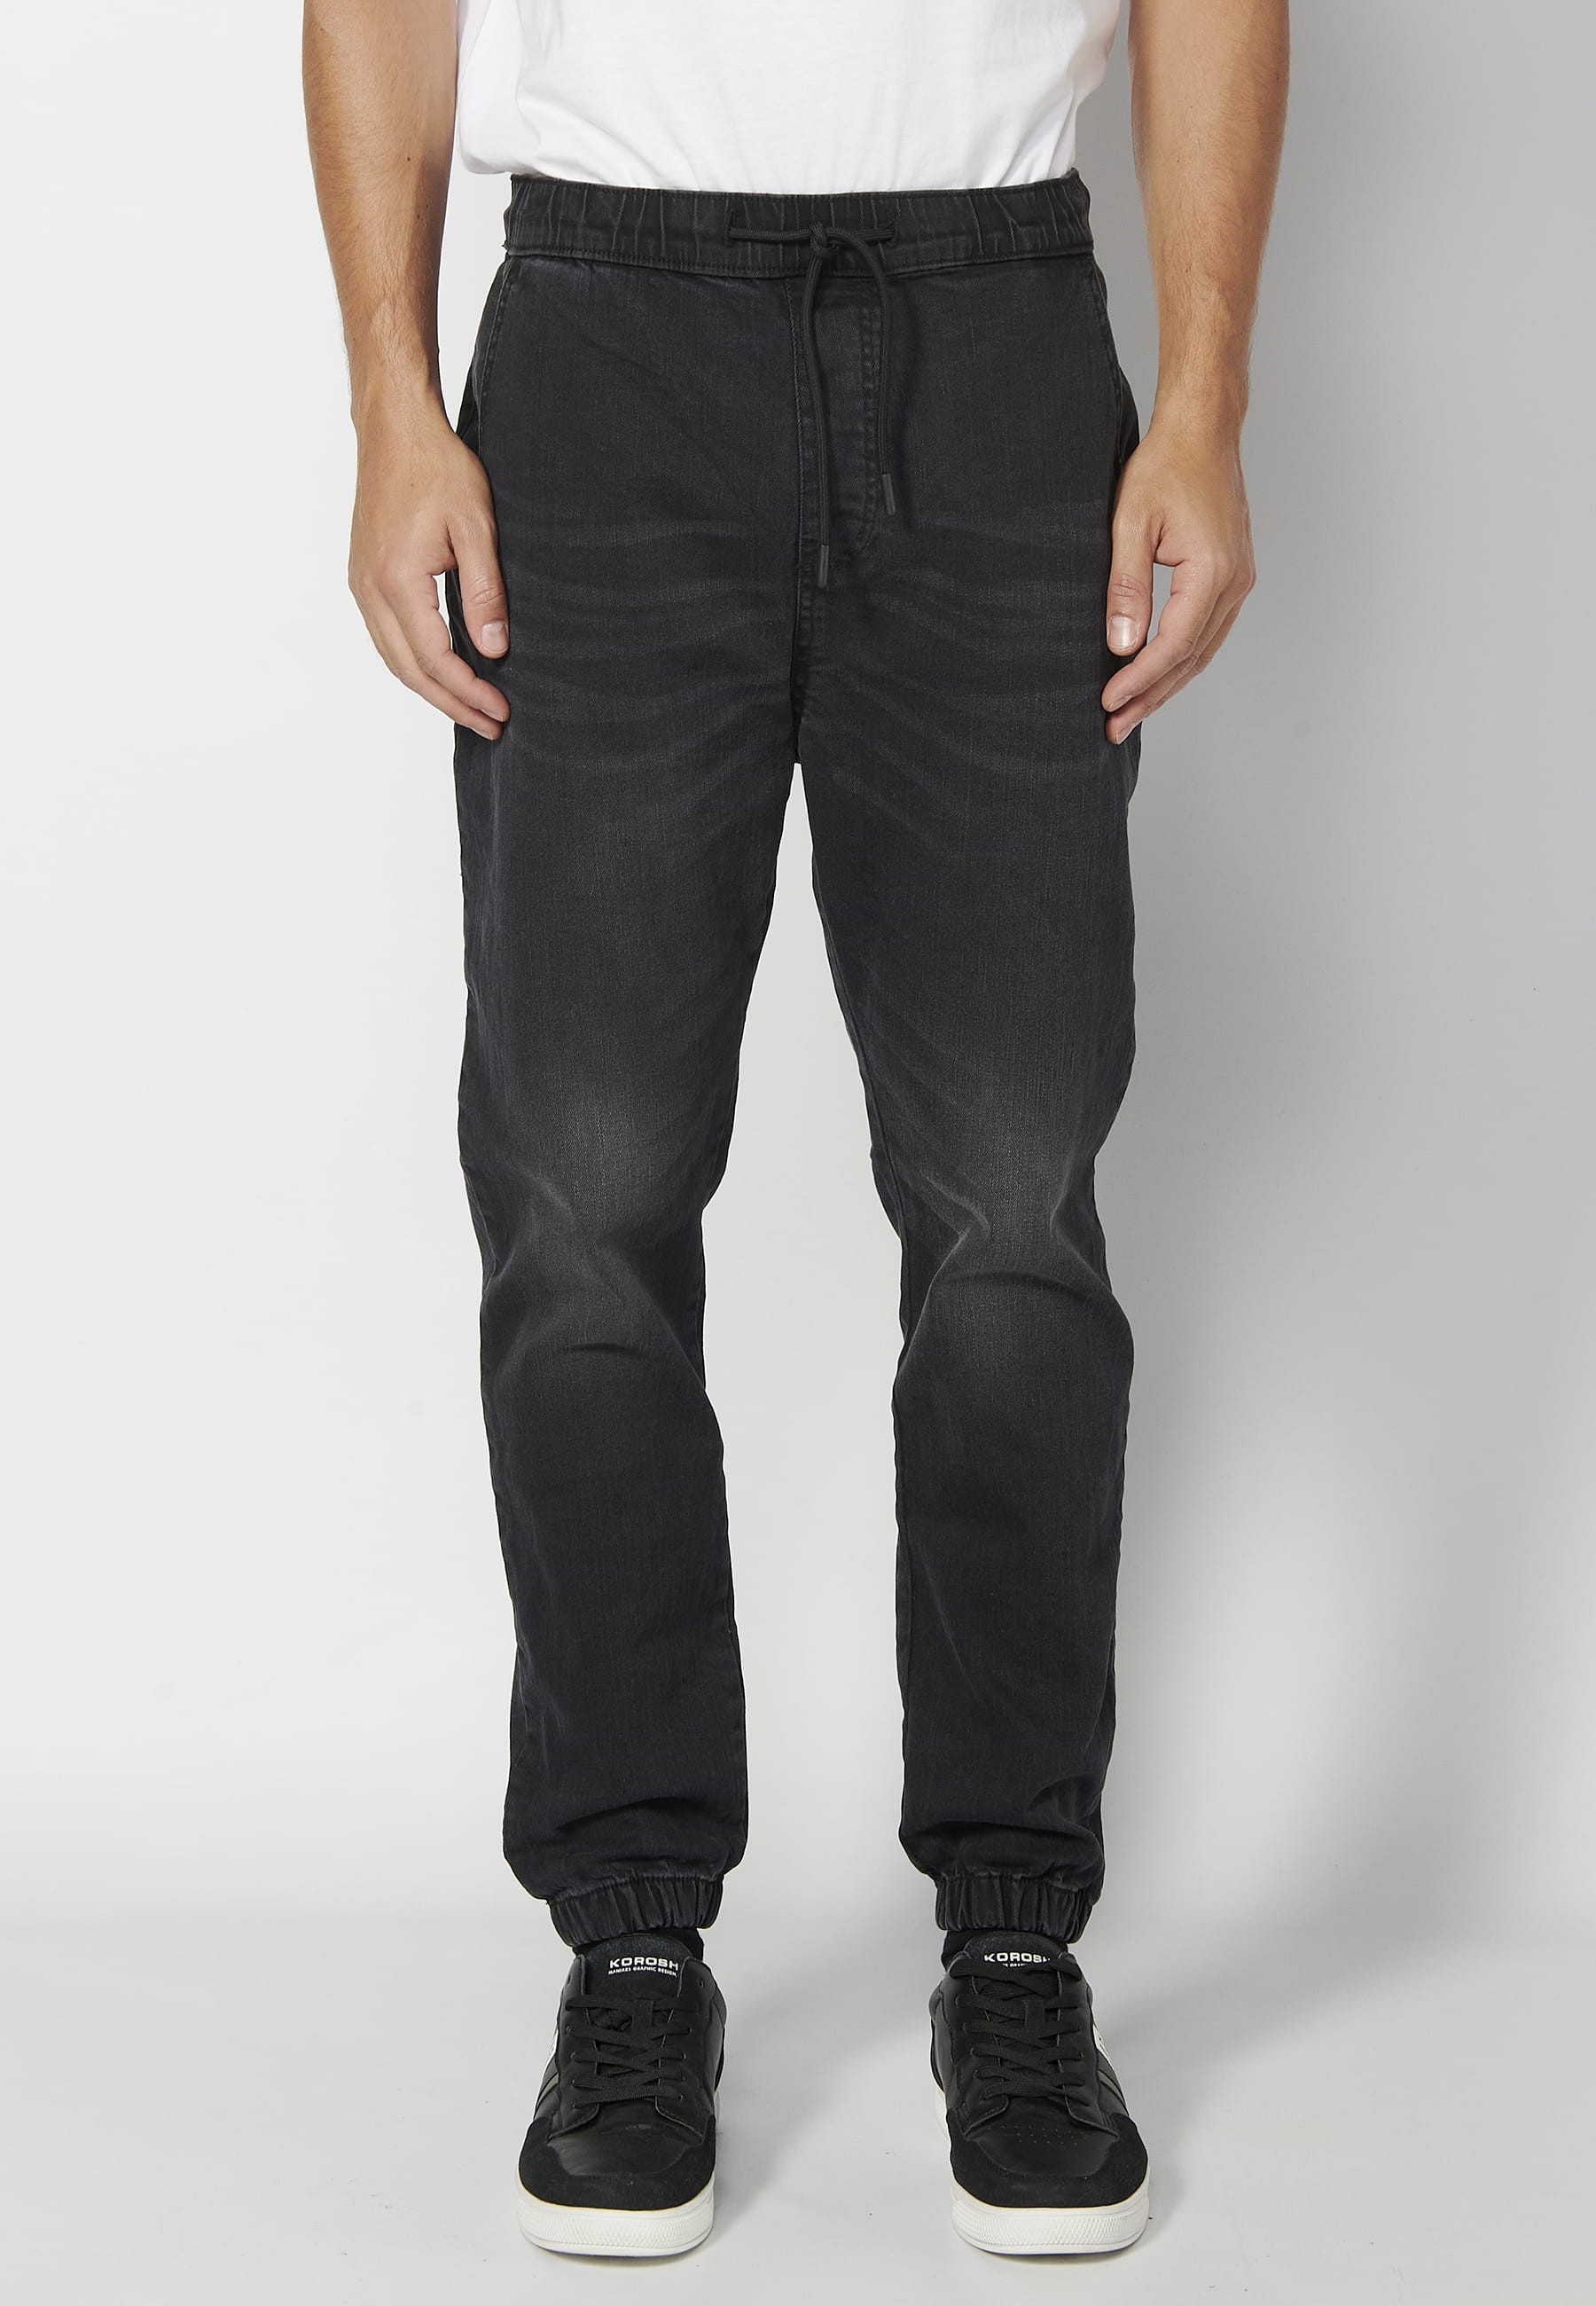 Pantalón Deportivo largo jogger cintura elástica color Negro para Hombre 2